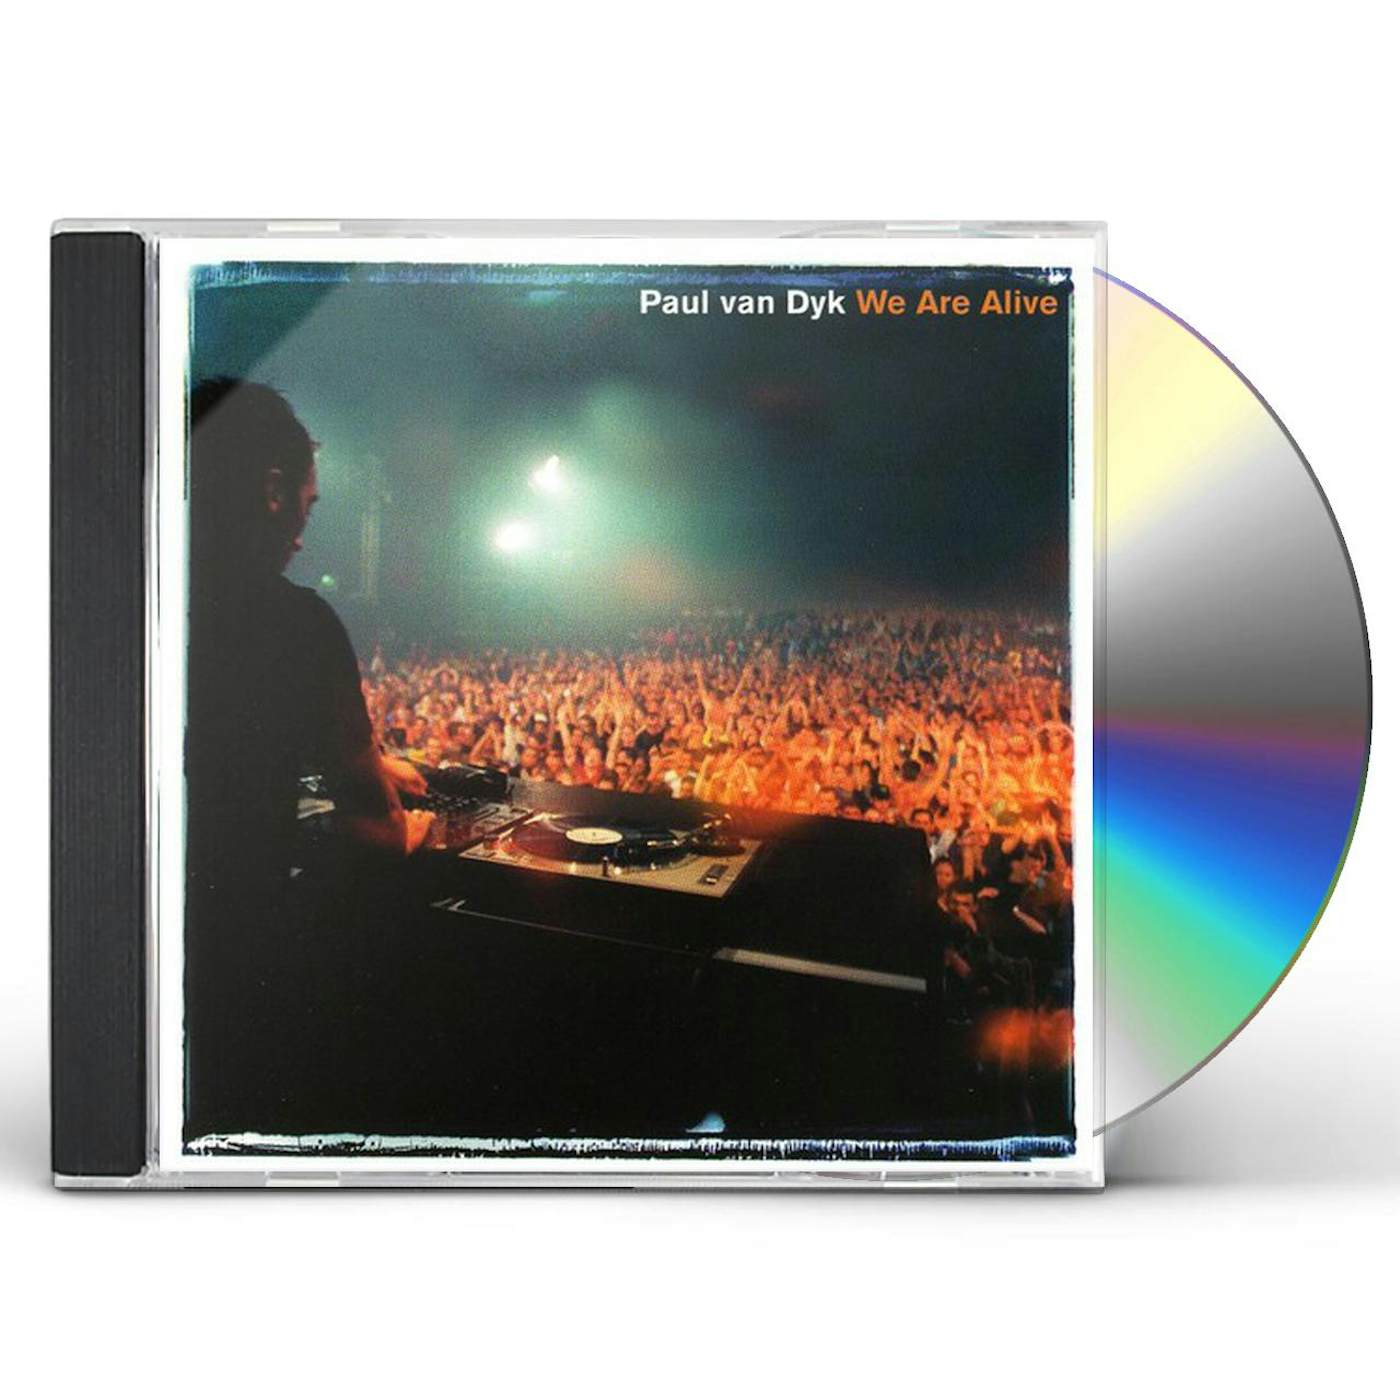 Paul van Dyk WE ARE ALIVE CD